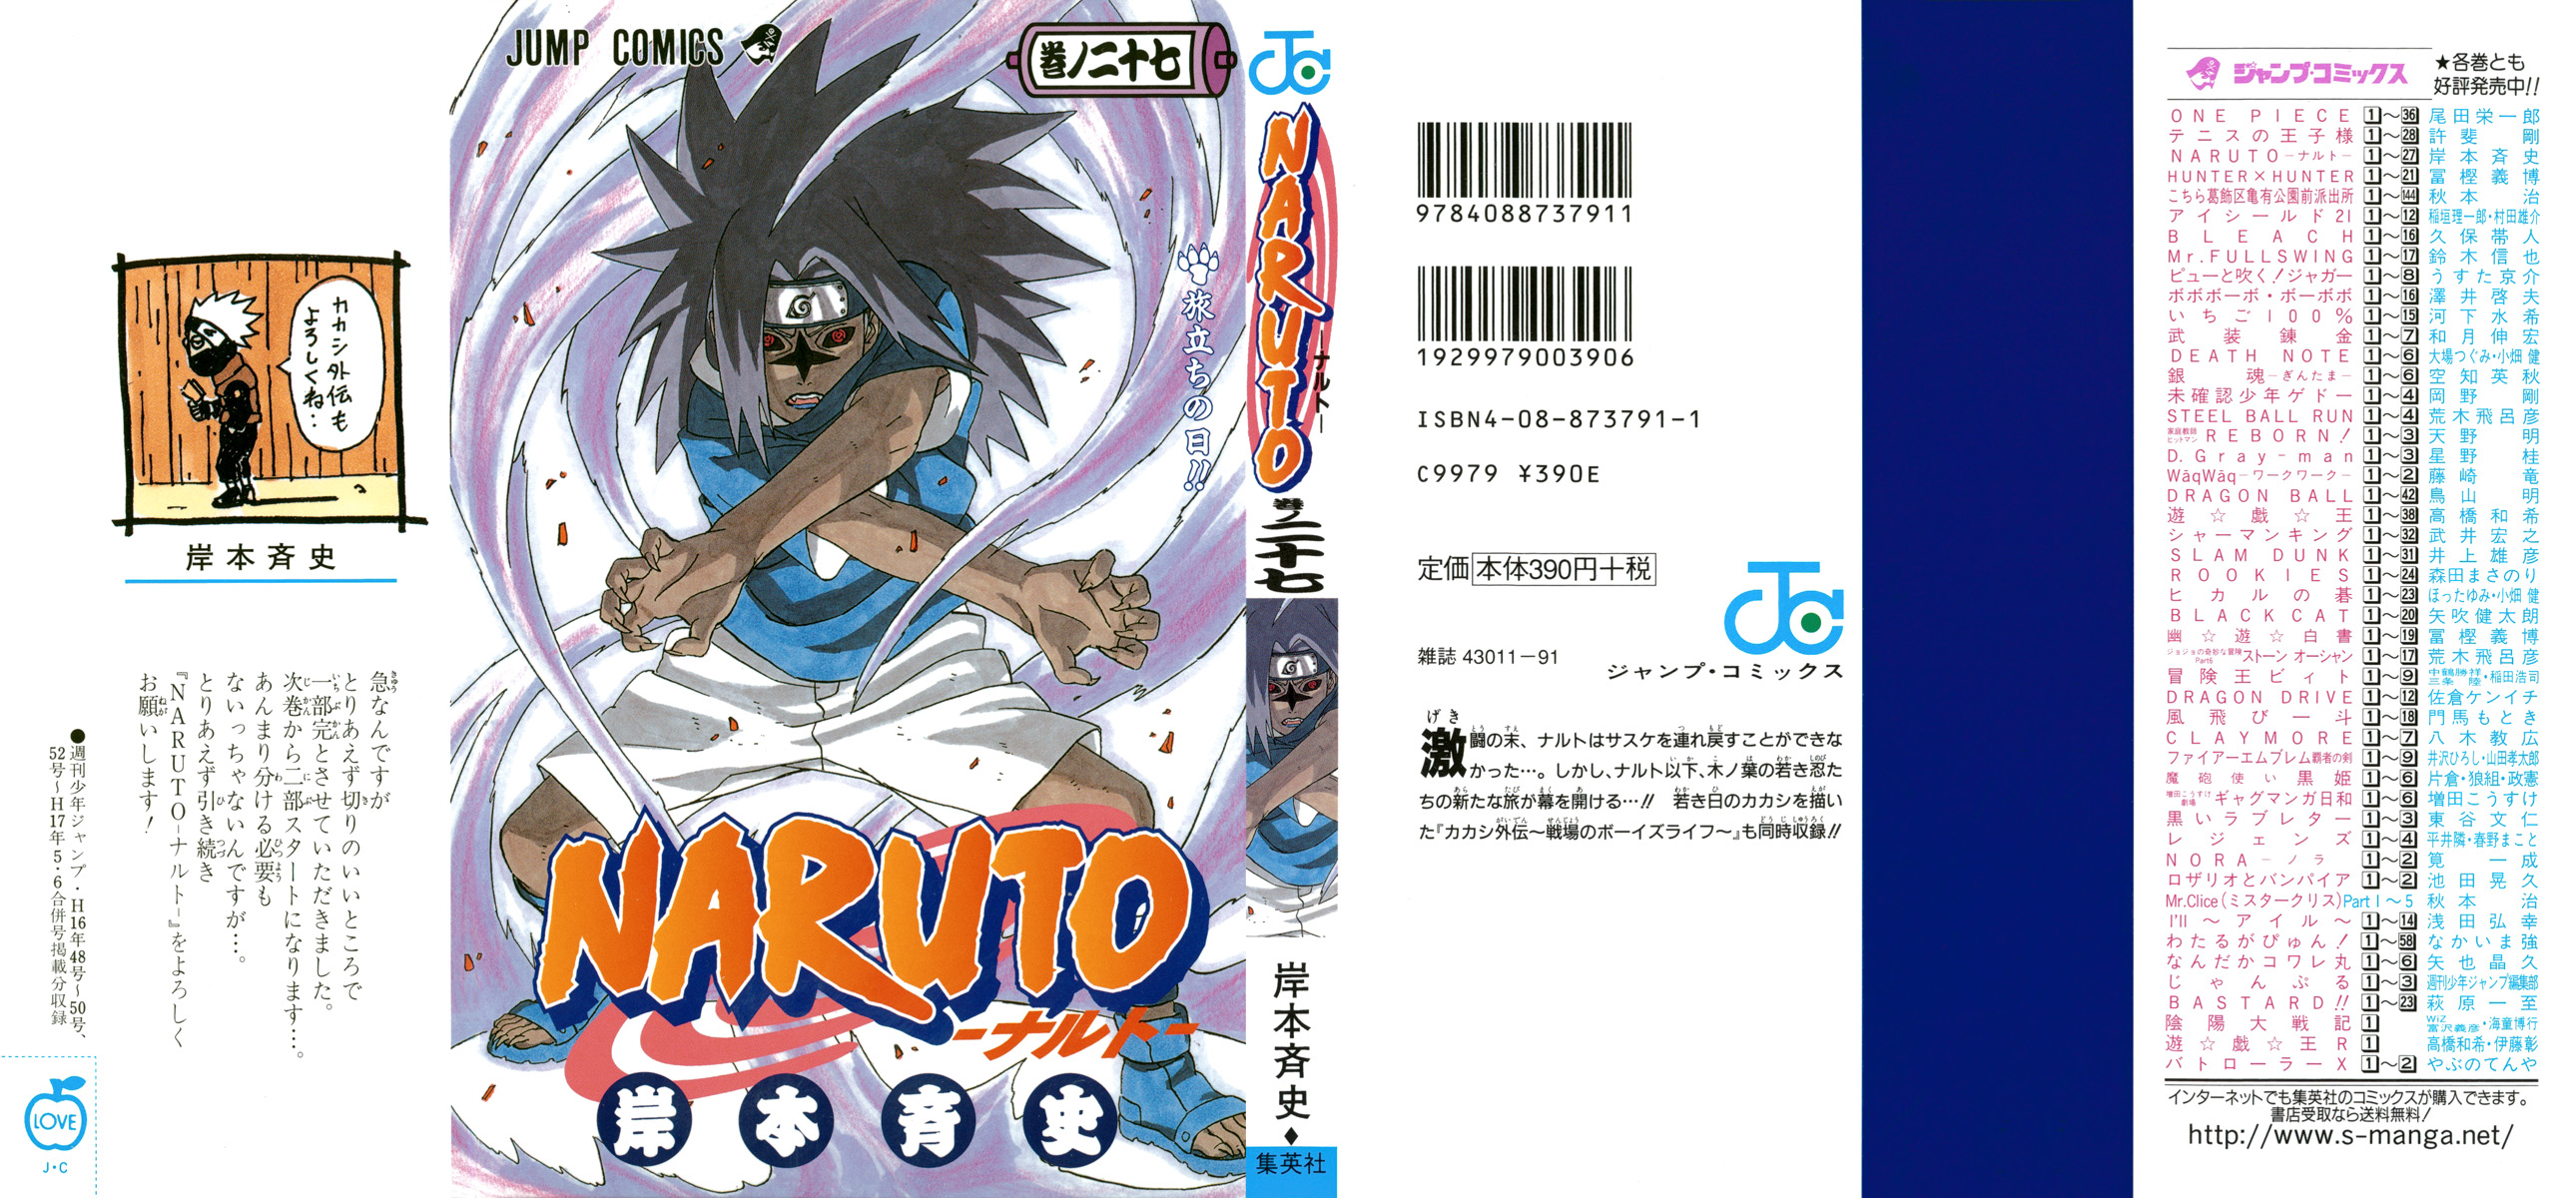 Naruto ナルト 54巻 漫画村 まんがまとめ 無料コミック漫画 ネタバレ